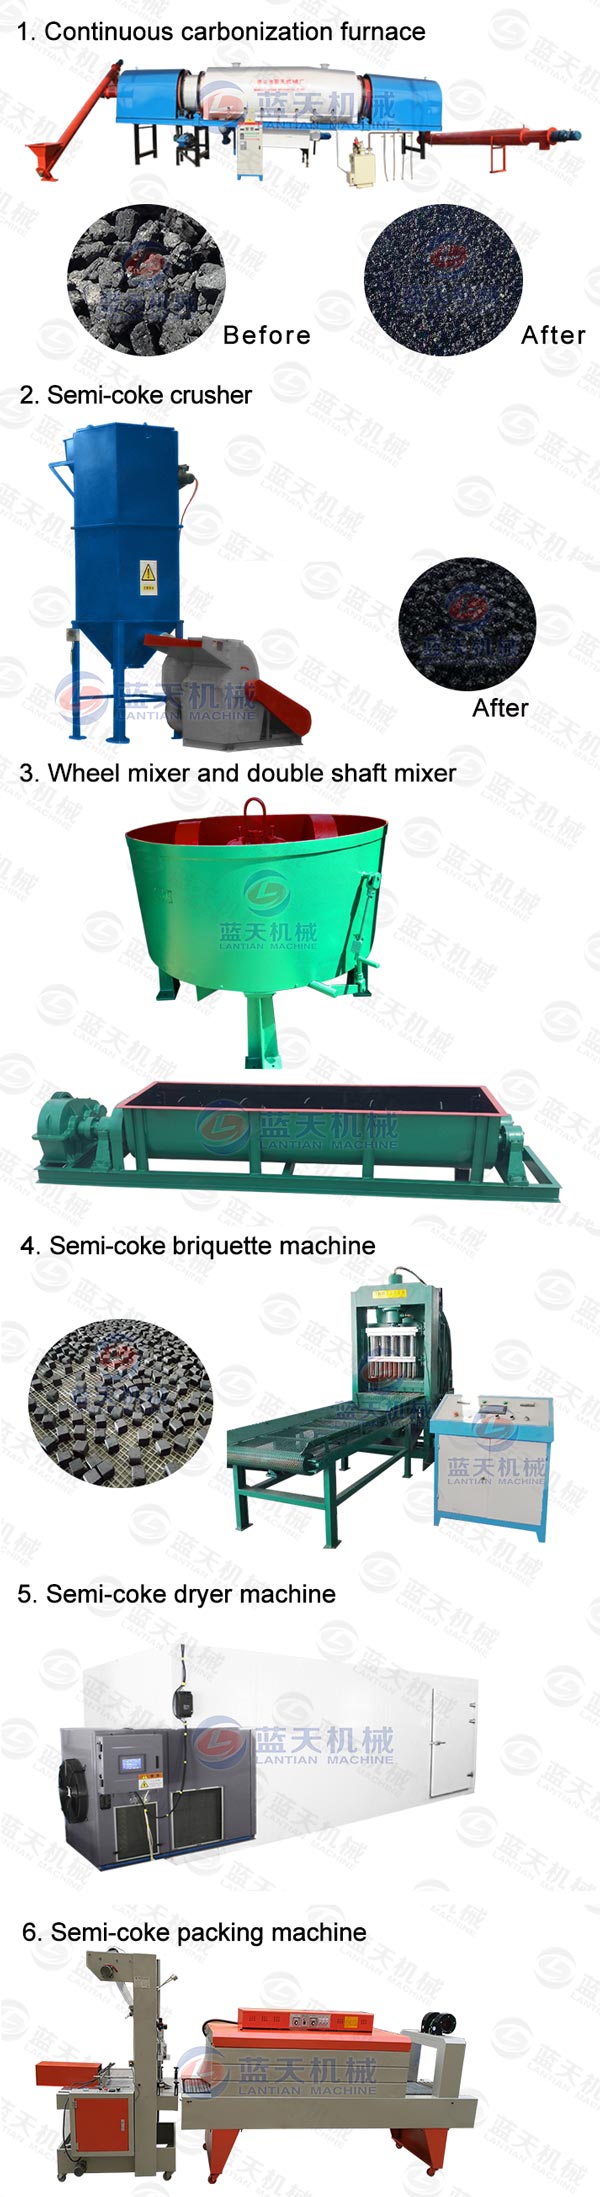 Product line of semi-coke briquette machine